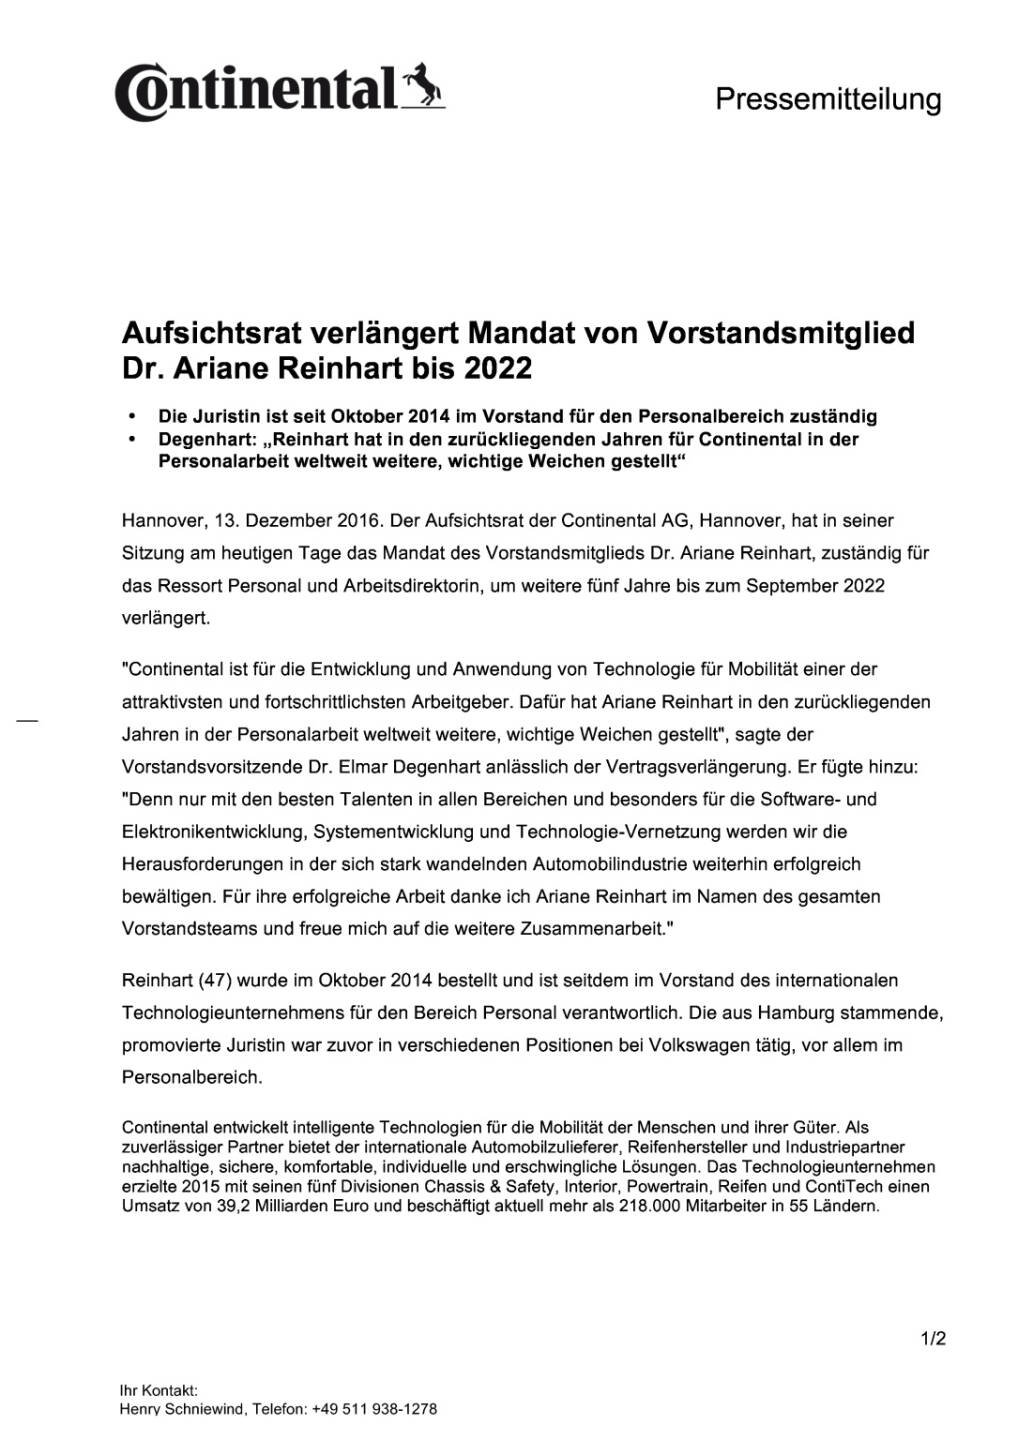 Continental: Mandat von Vorstandsmitglied Ariane Reinhart verlängert, Seite 1/2, komplettes Dokument unter http://boerse-social.com/static/uploads/file_2015_continental_mandat_von_vorstandsmitglied_ariane_reinhart_verlangert.pdf